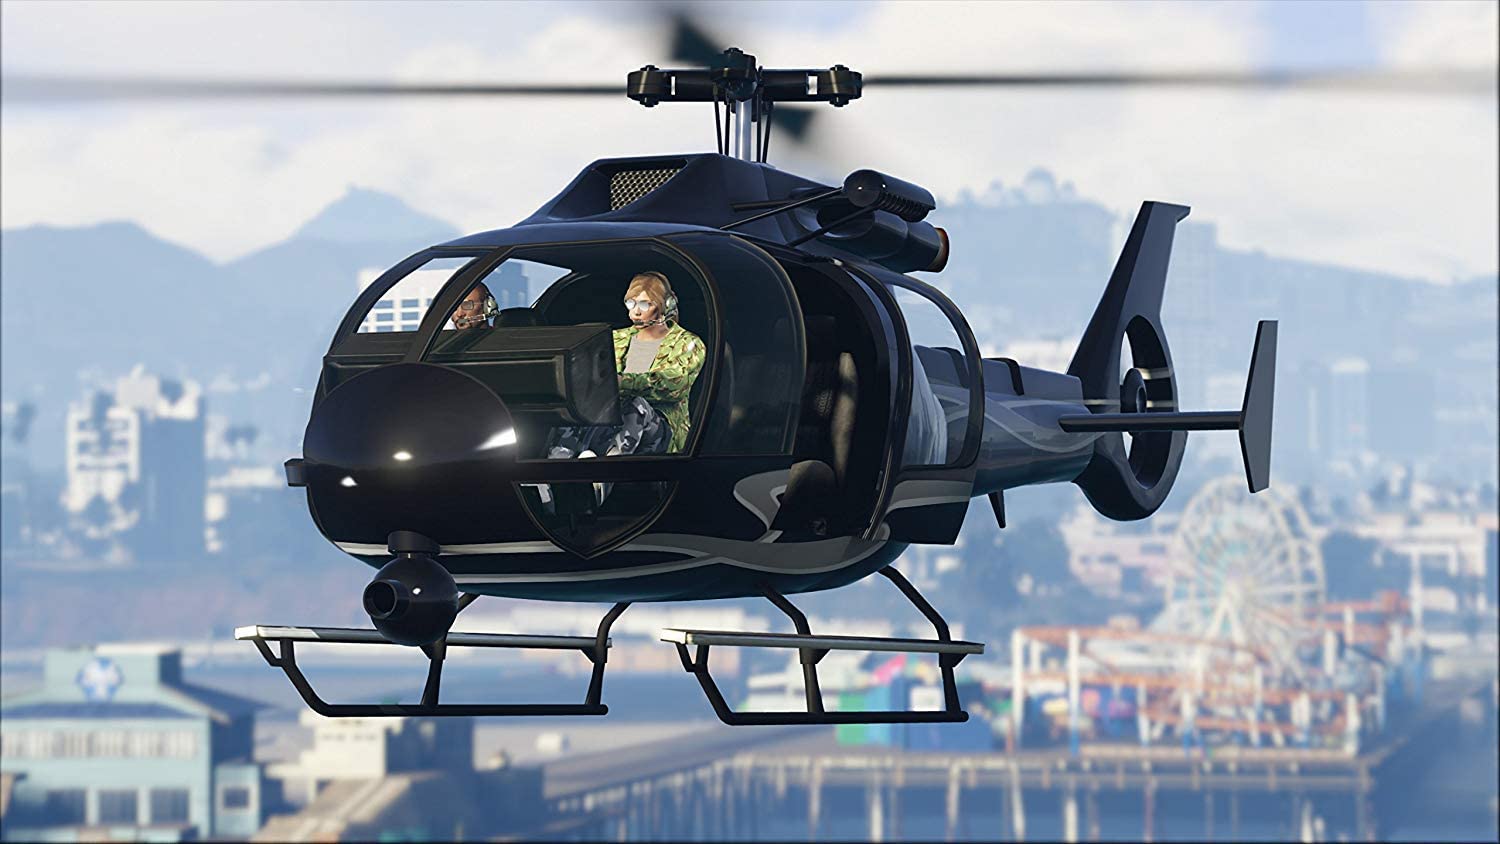 Grand Theft Auto V (GTA V) for PS4